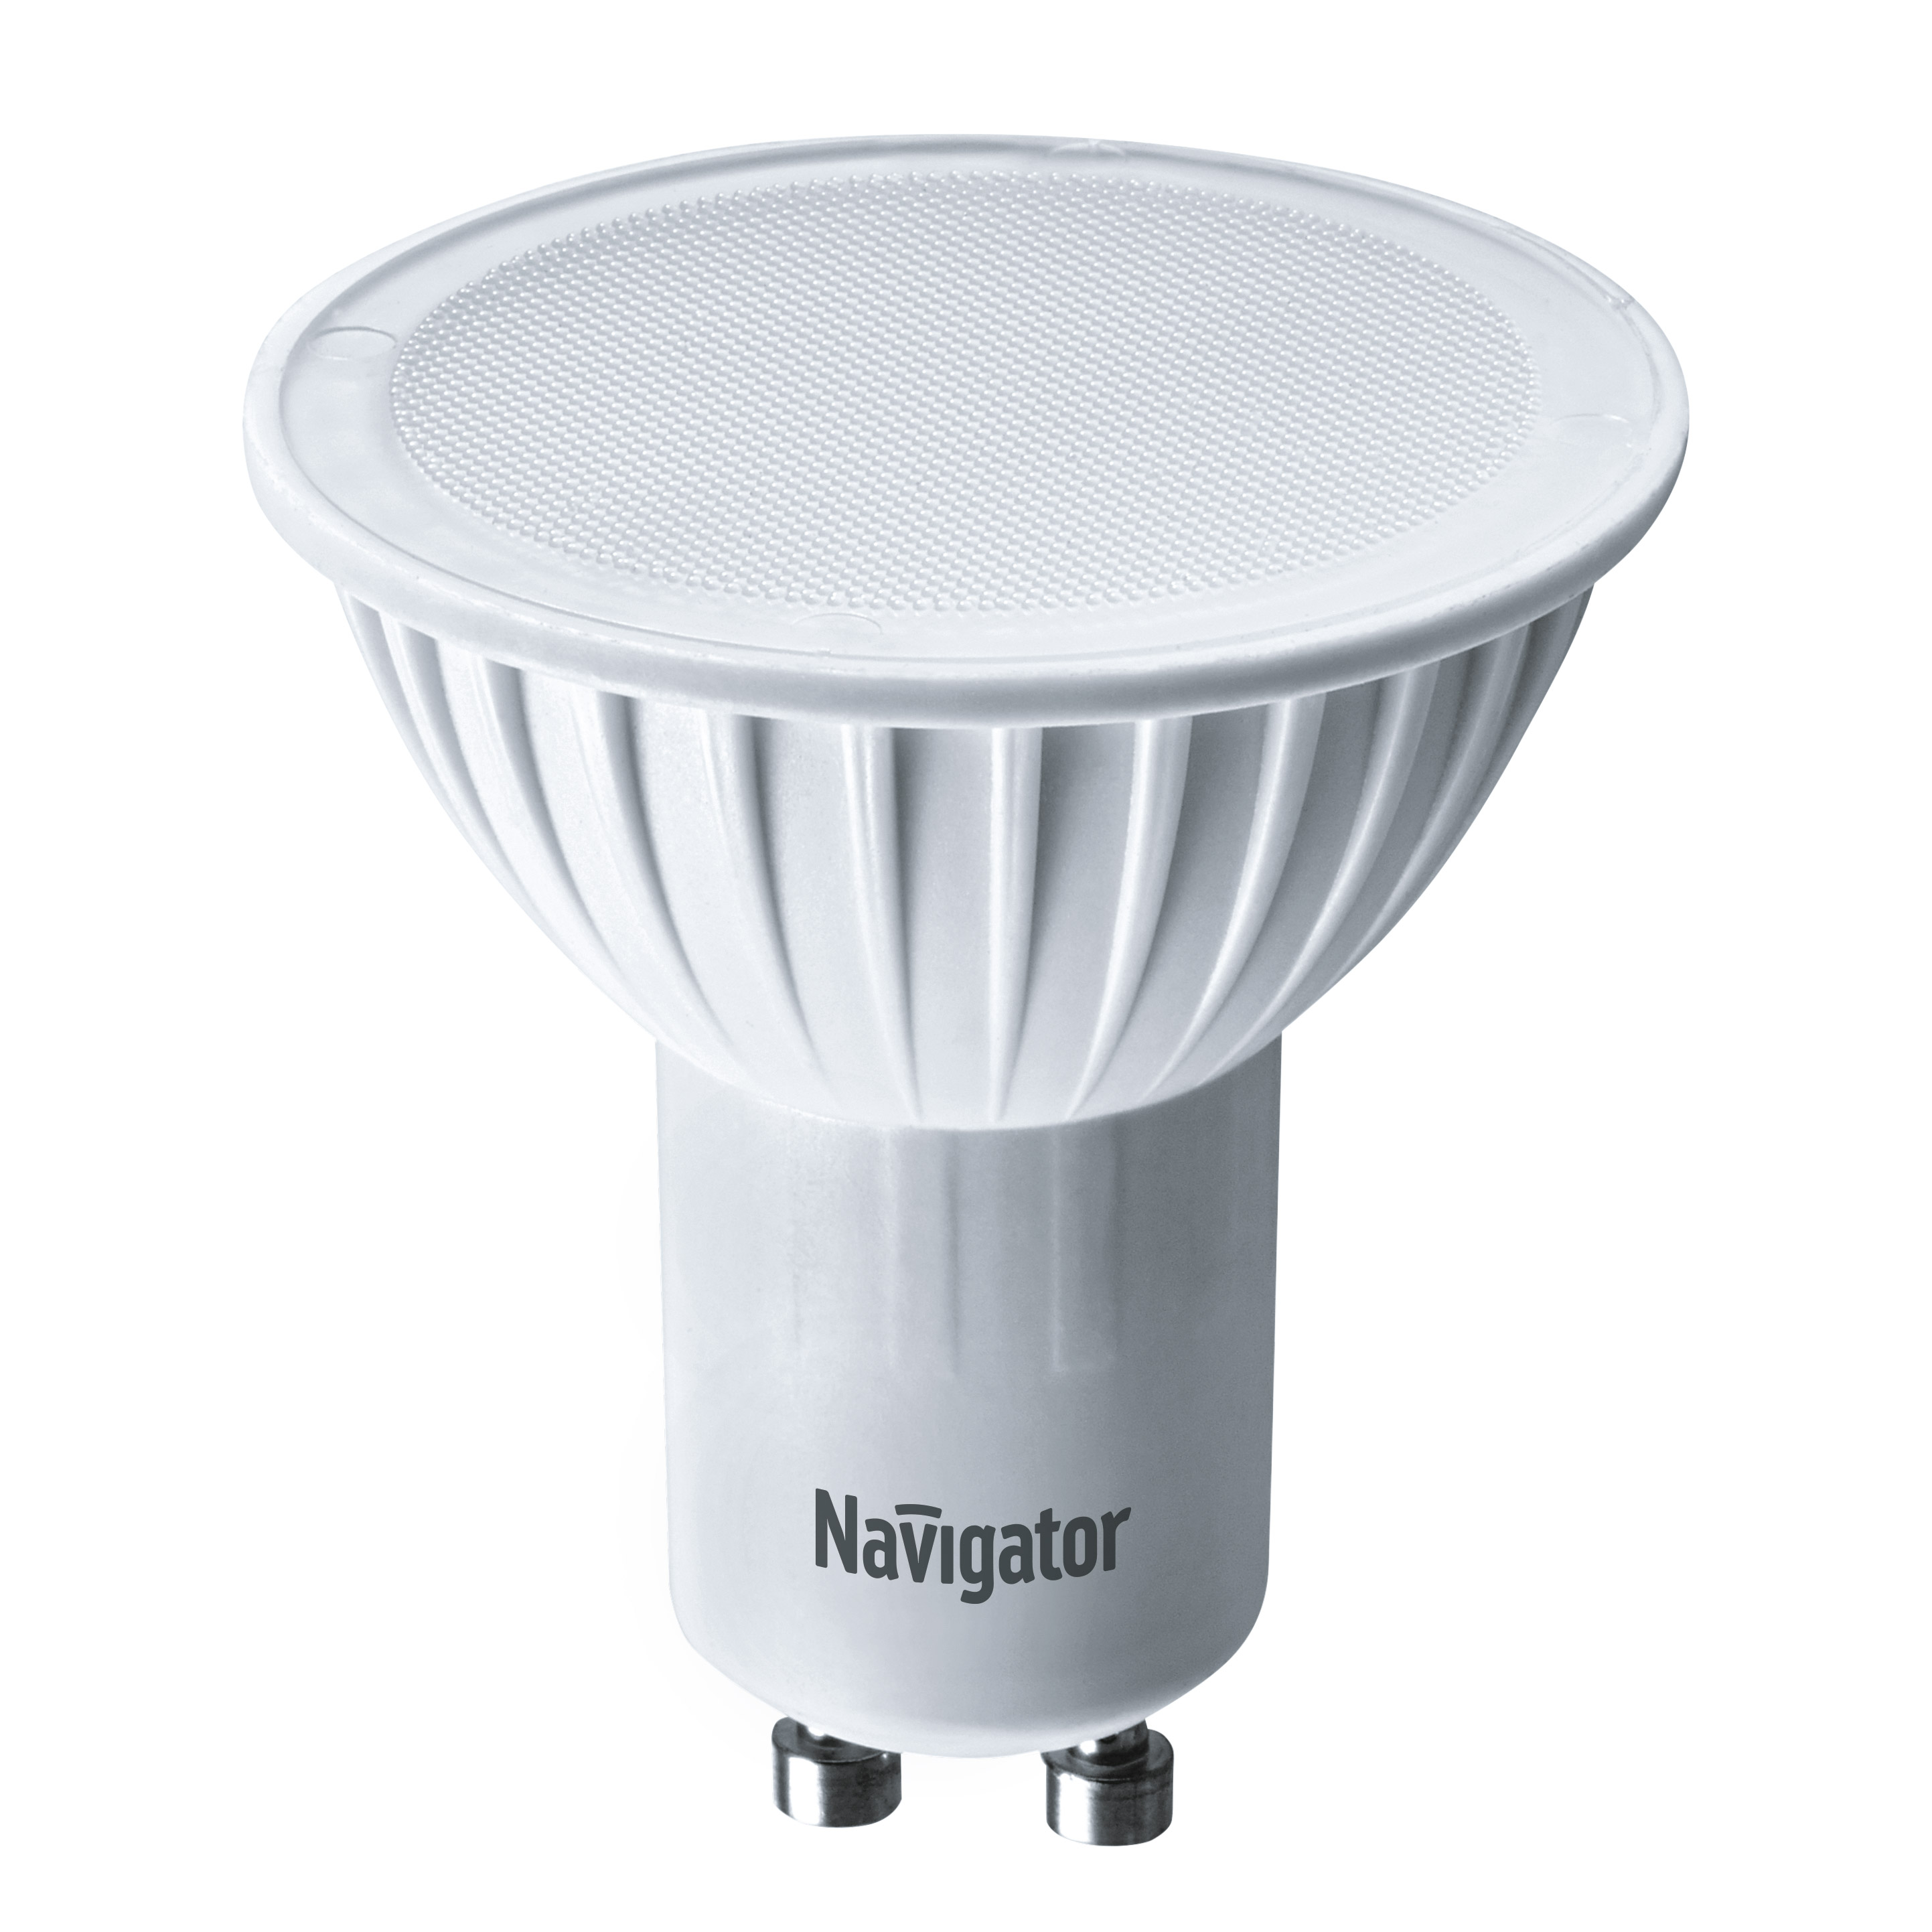 Лампа светодиодная Navigator PAR16 5Вт цоколь GU10 (теплый свет) лампа светодиодная navigator зеркальная r39 2 5вт цоколь e14 холодный свет